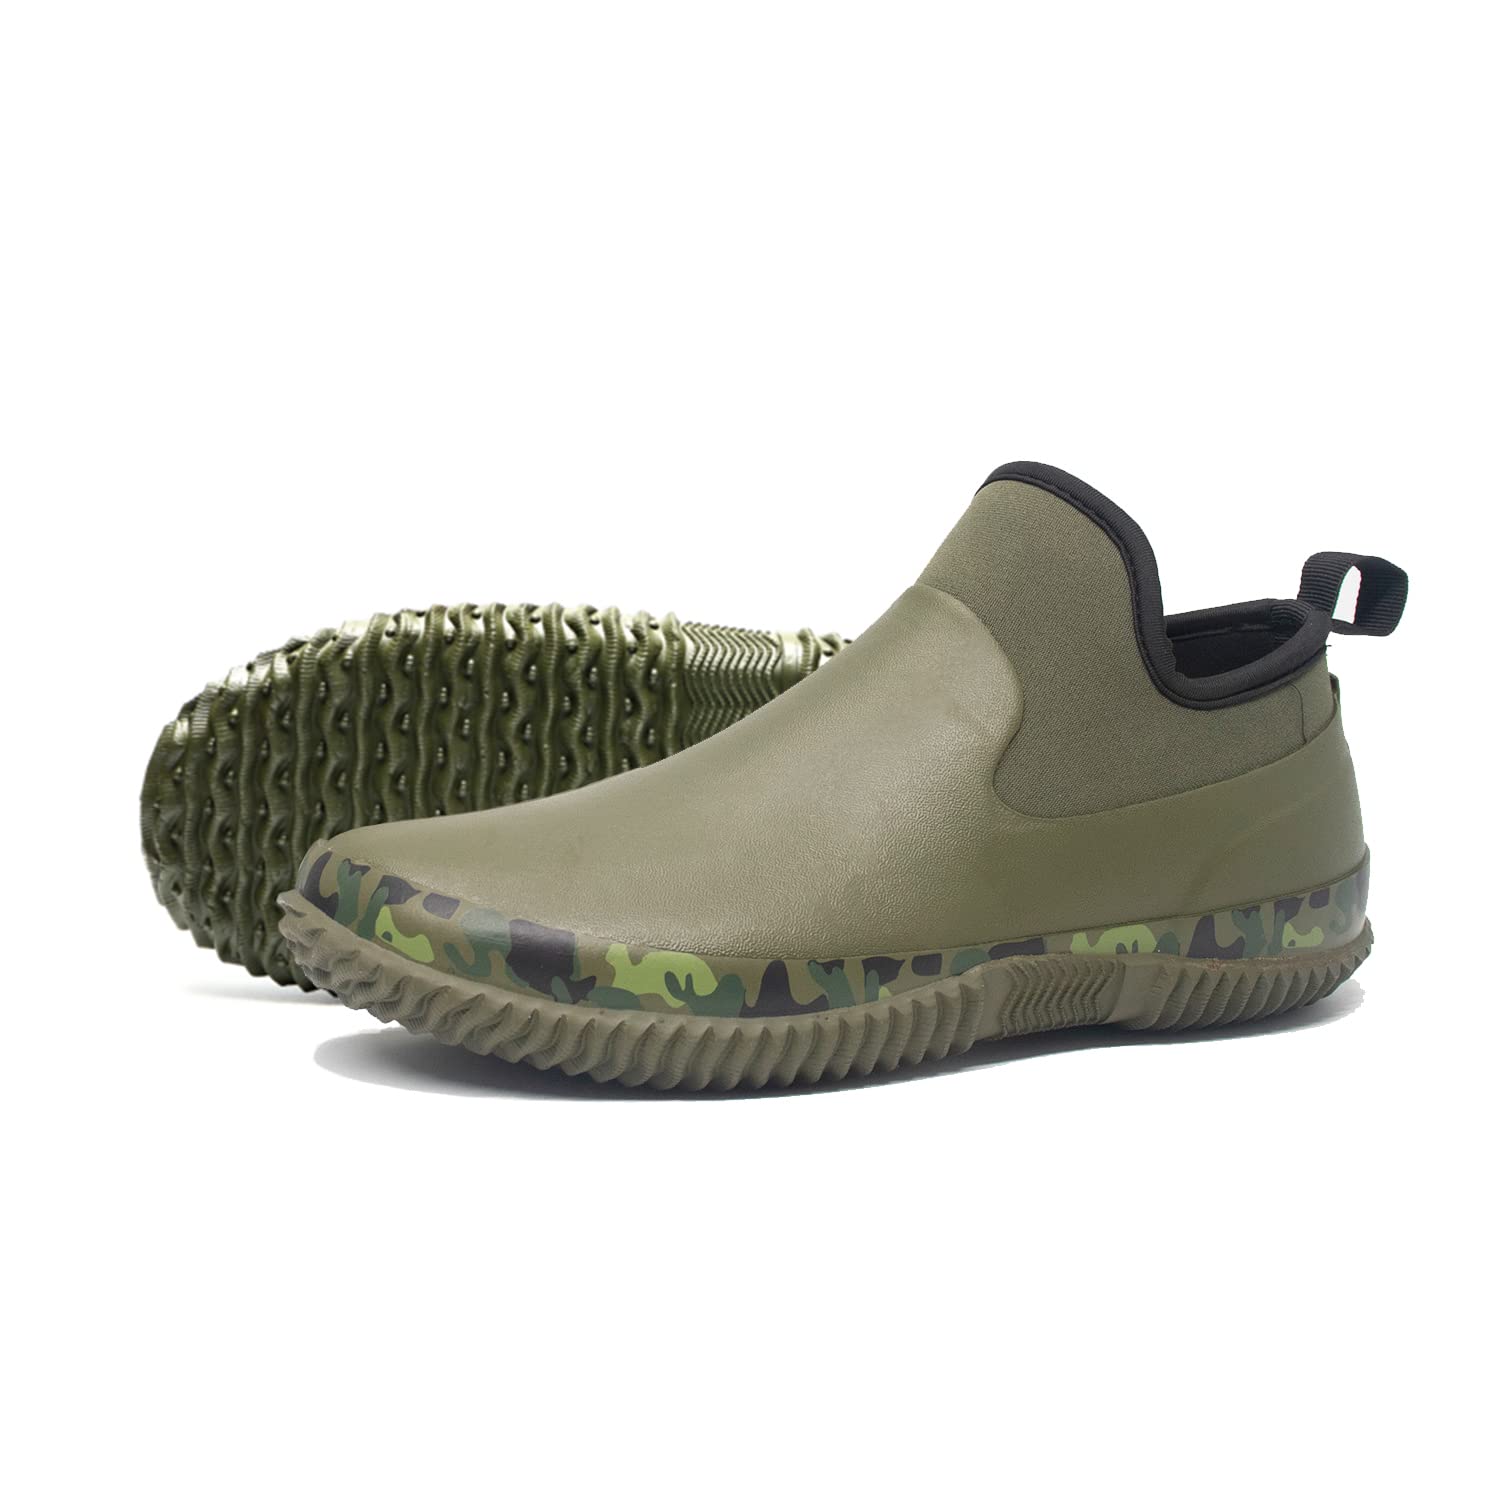 SWIFT*FROG Unisex Waterproof Garden Shoes Ankle Rain Boots Mud Muck Rubber Slip-On Footwear with Comfort Insole for Women Men 13 Women/11.5 Men Green